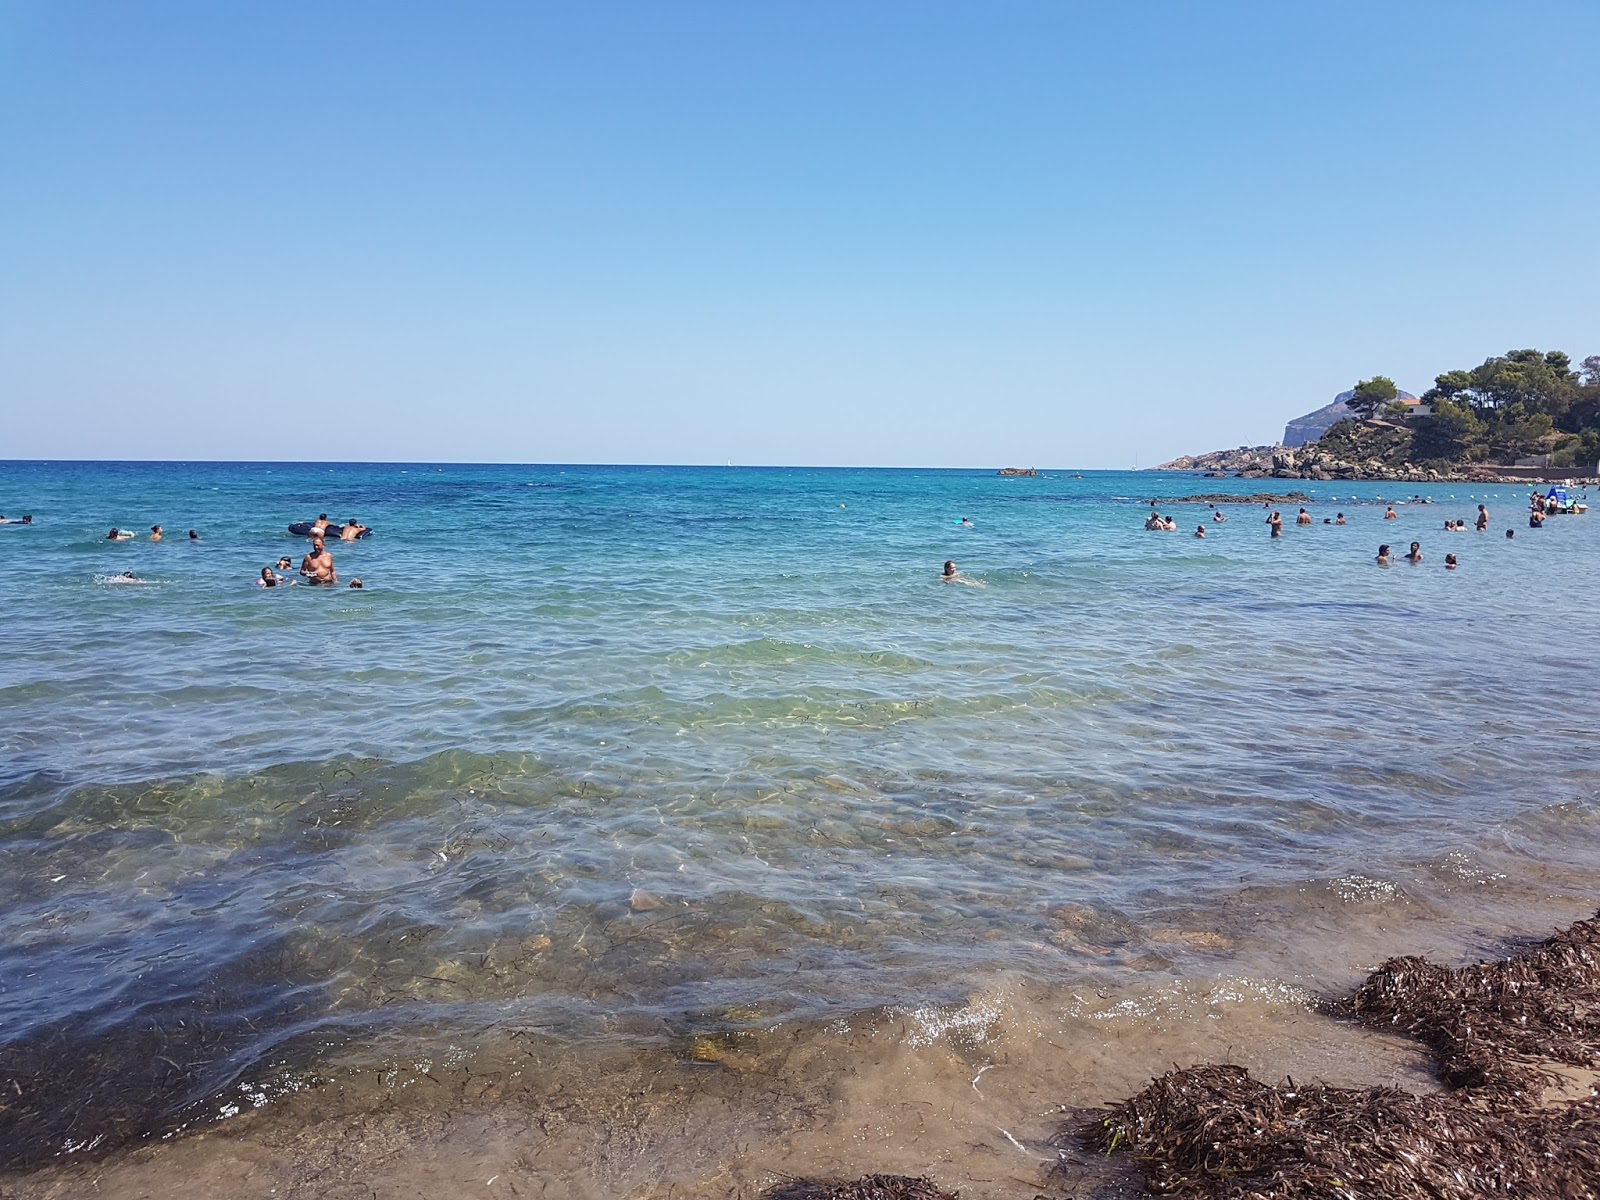 Foto av Spiaggia Di Mazzaforno med rymlig bukt